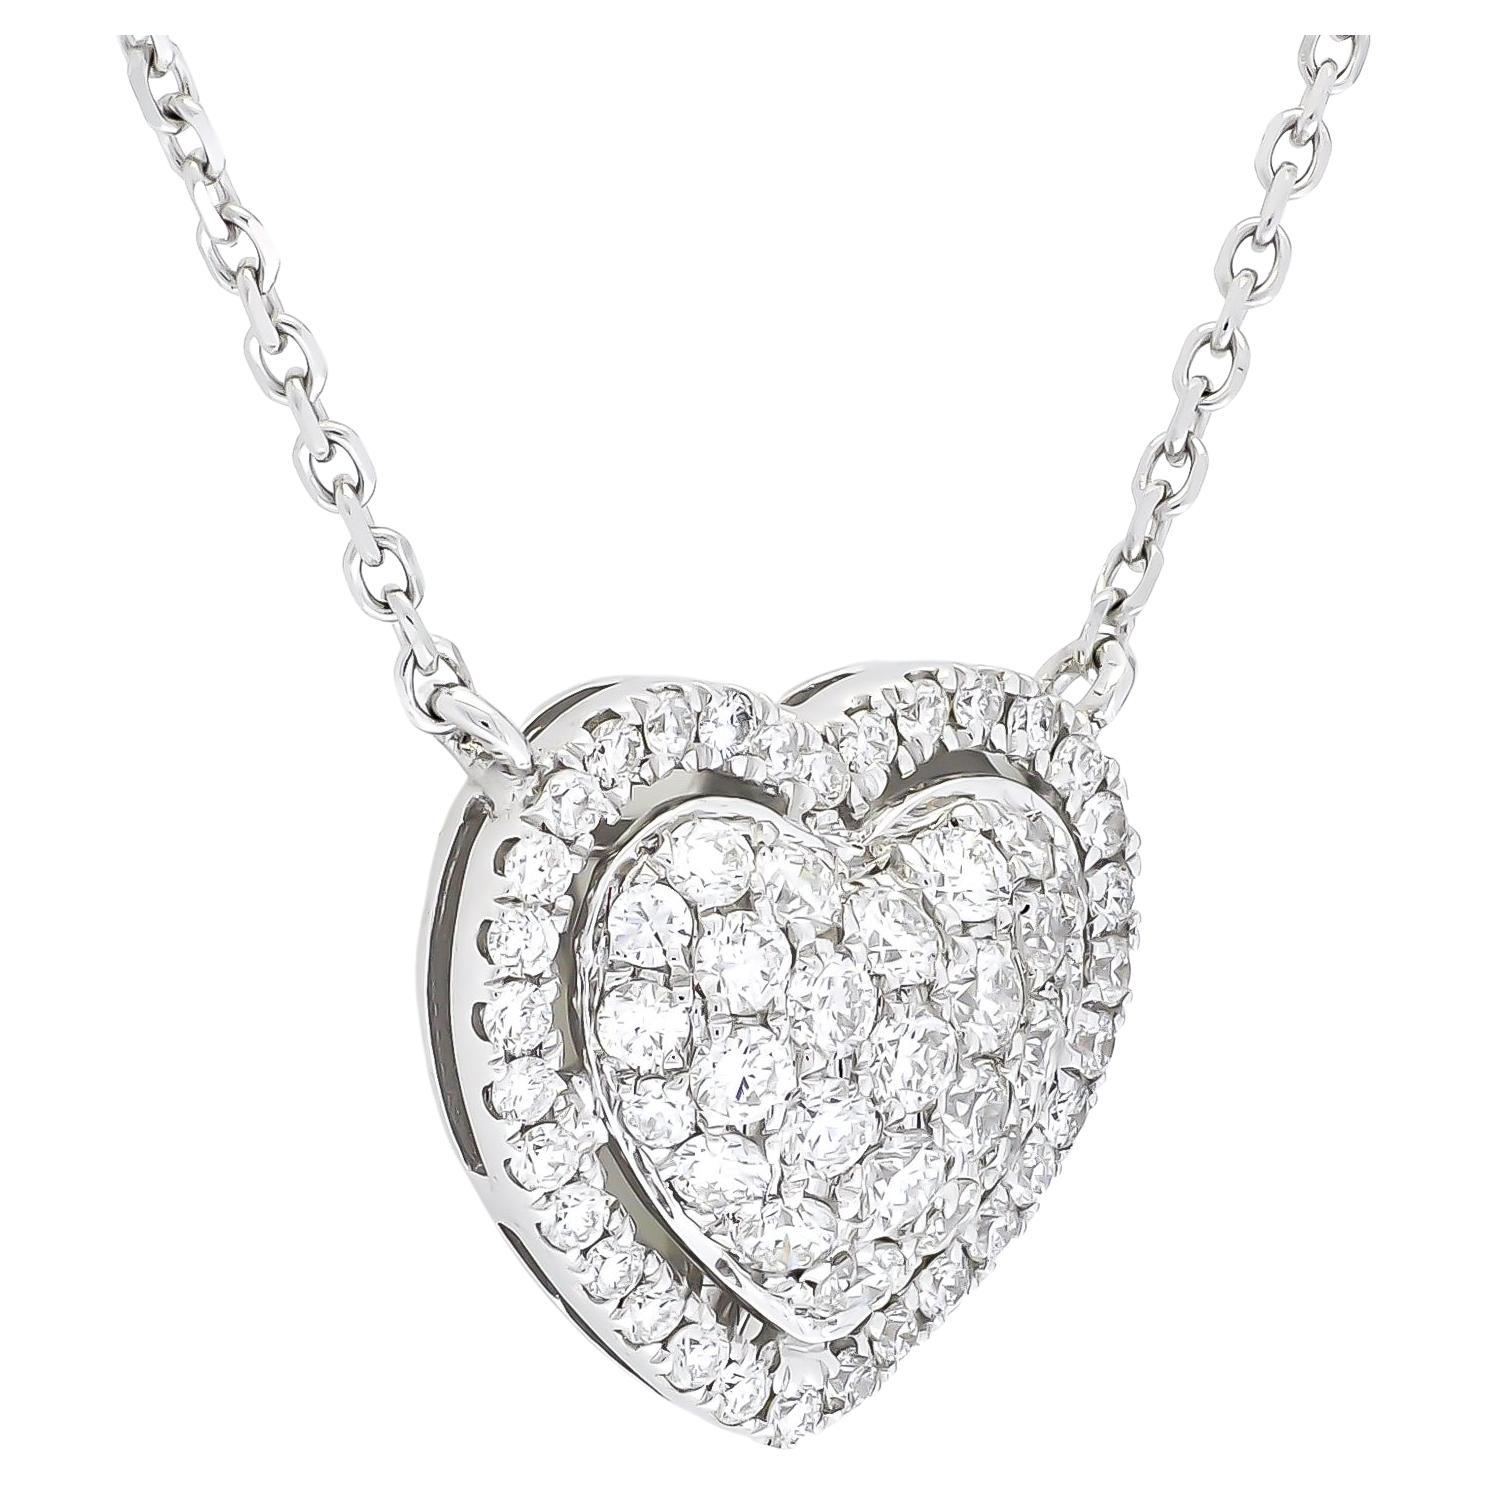 Ce collier avec pendentif en halo et grappe de diamants en forme de cœur éblouit par sa brillance. Le collier est orné de somptueux diamants scintillants de 0,55 carat, garantissant que chaque regard dans votre direction sera captivé par l'éclat et